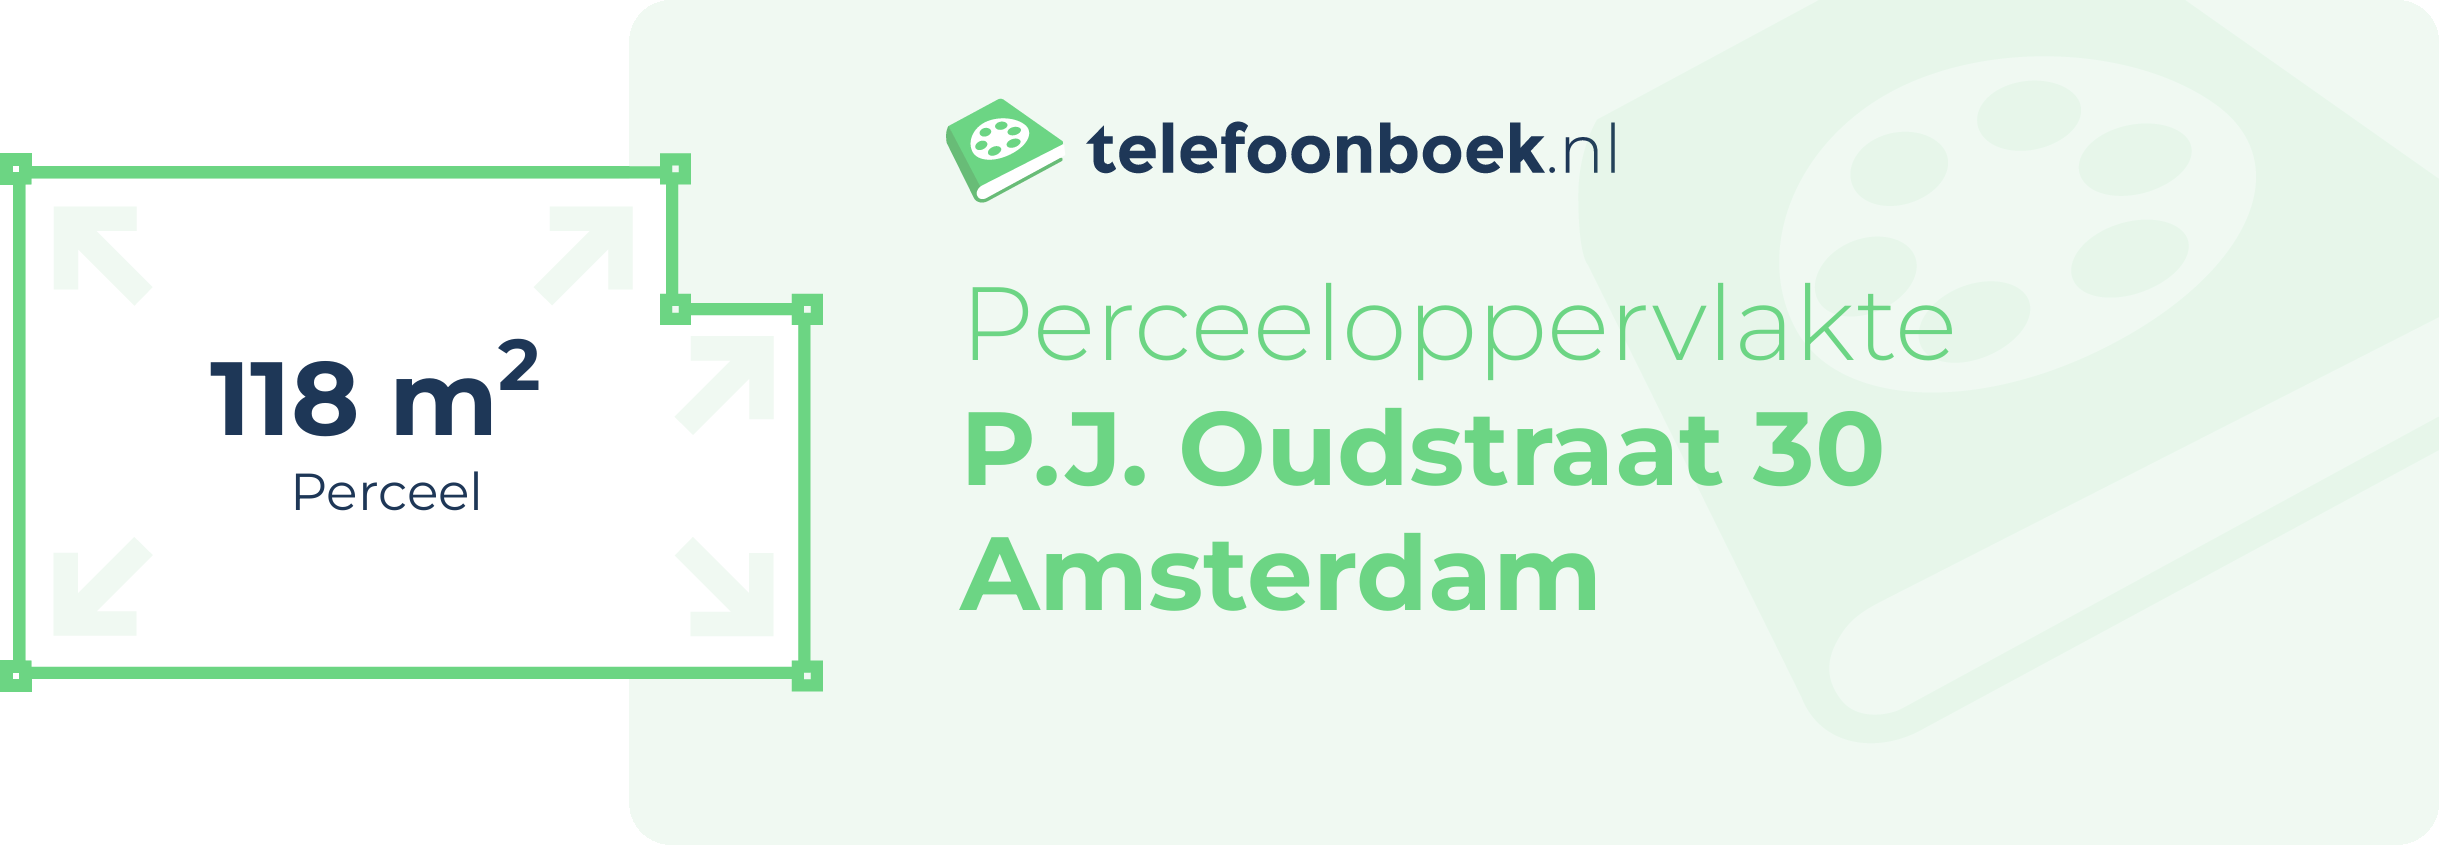 Perceeloppervlakte P.J. Oudstraat 30 Amsterdam